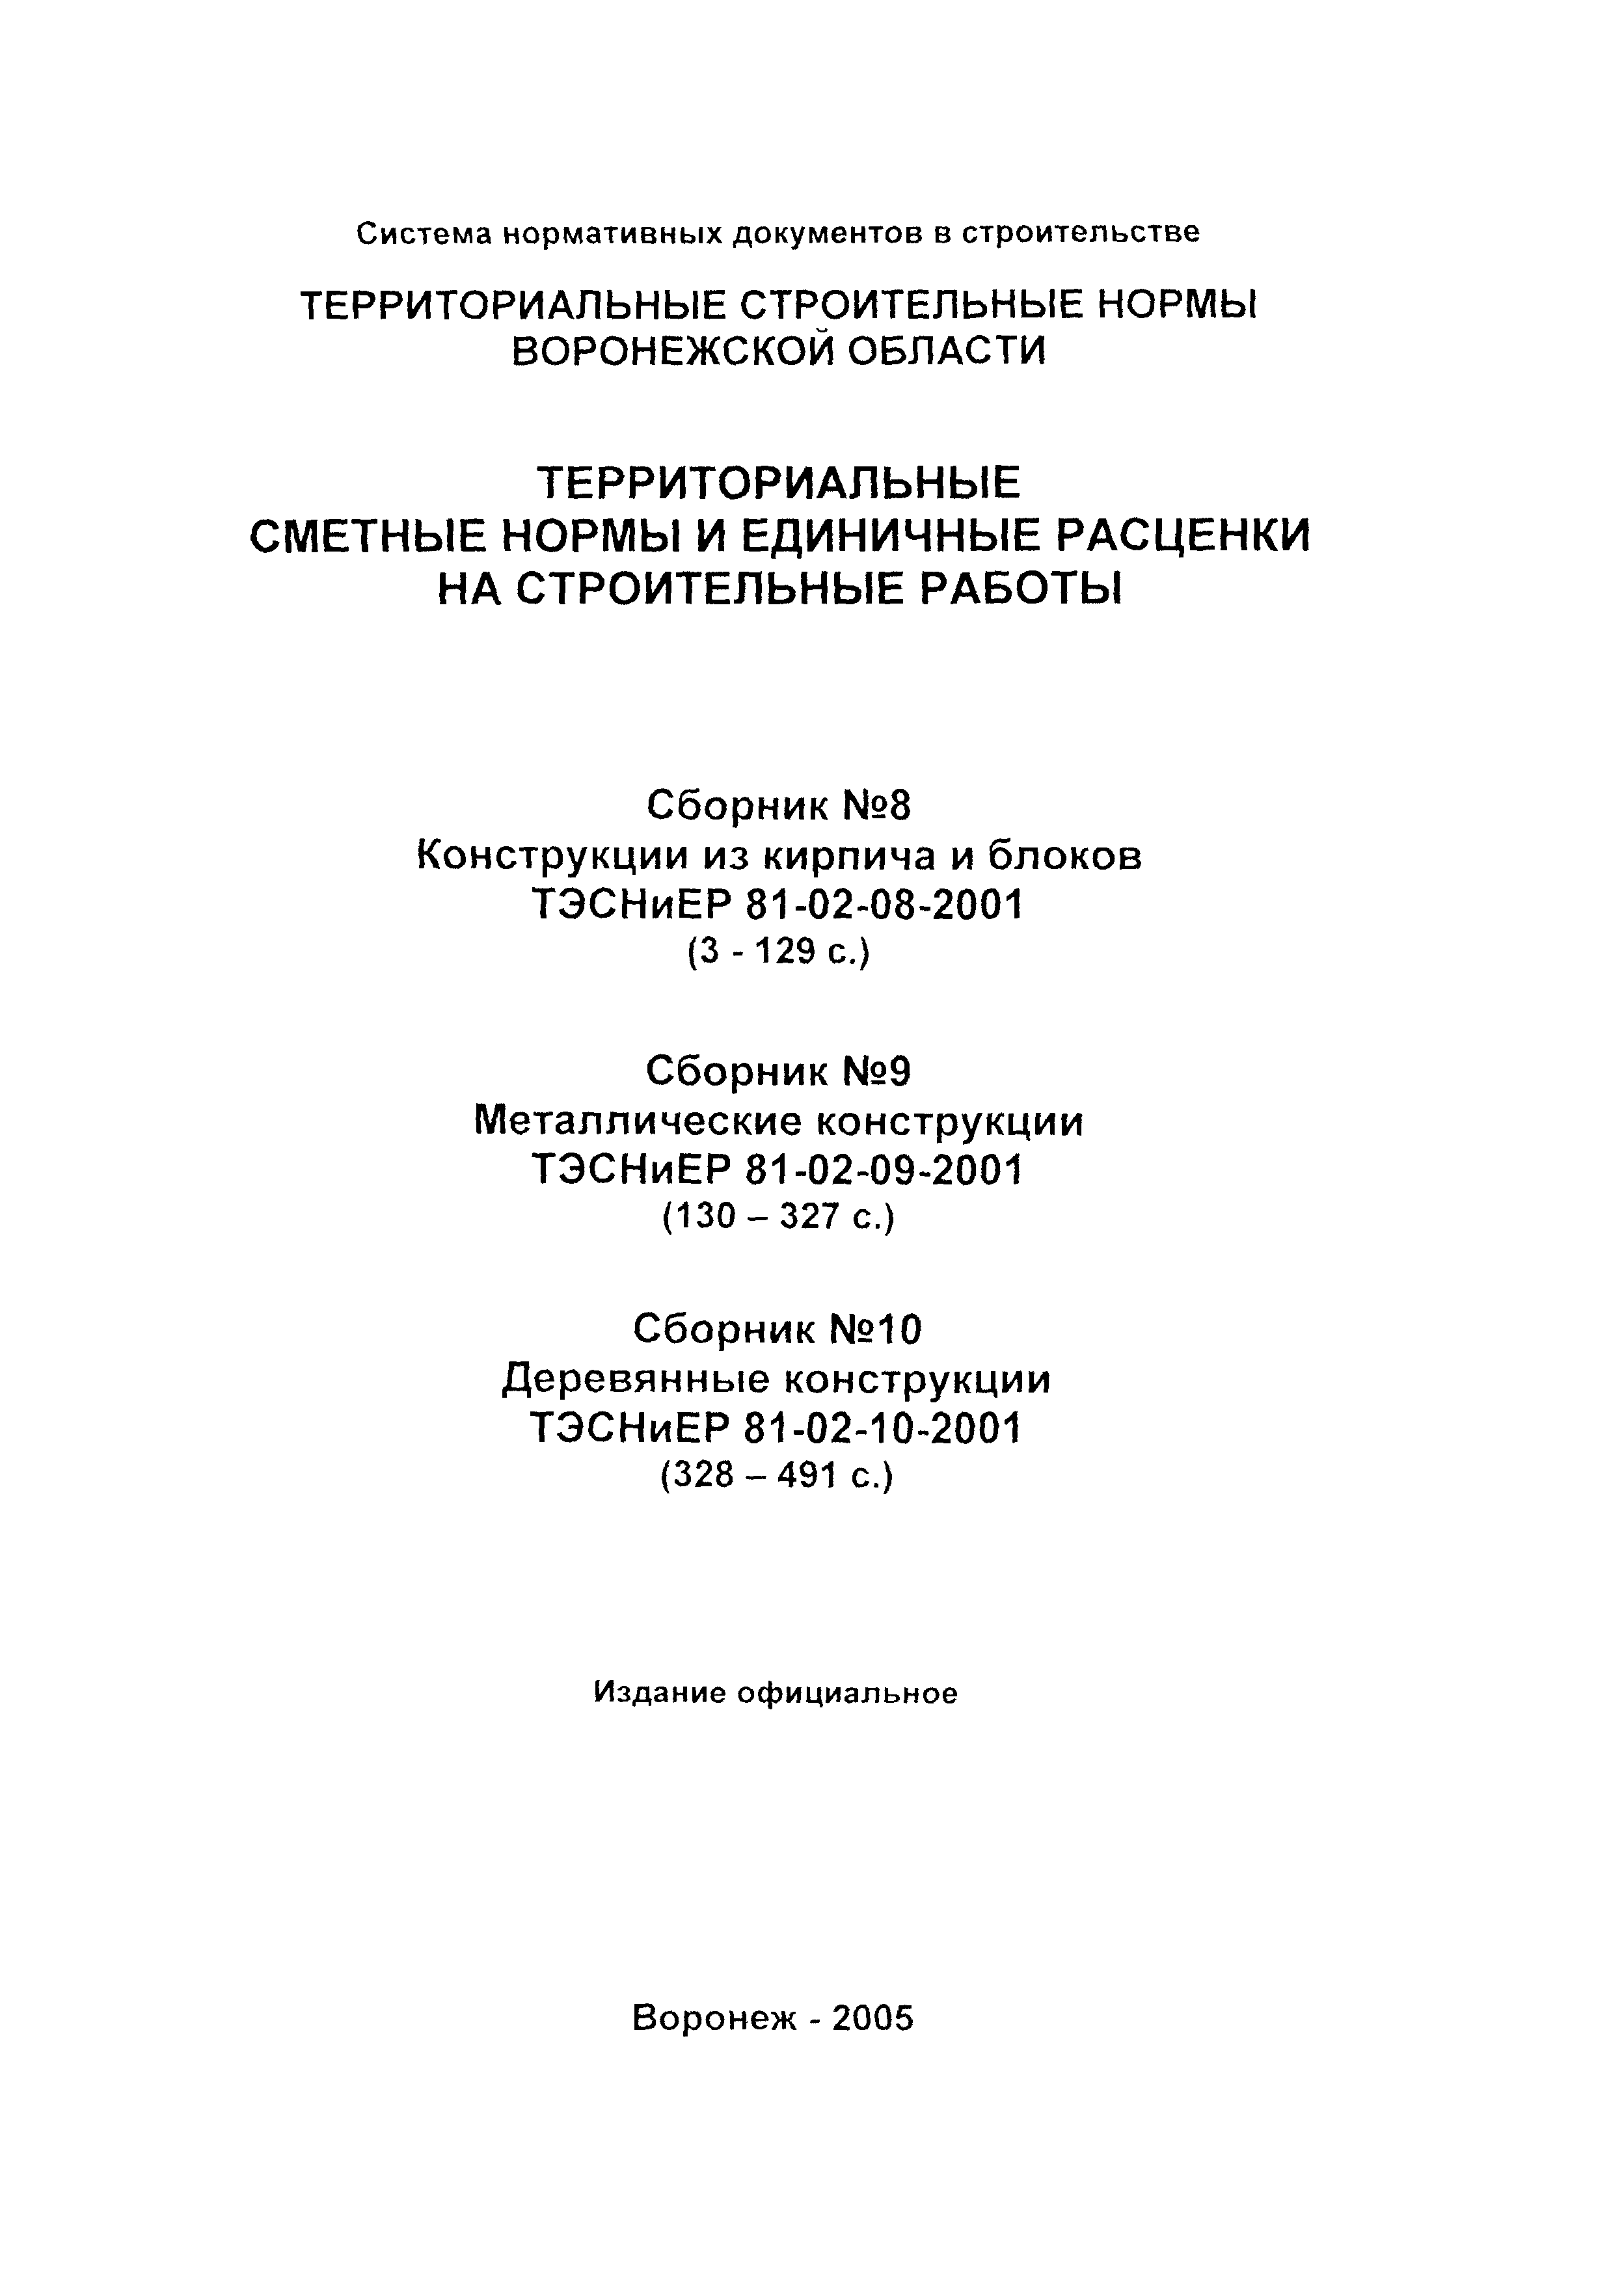 ТЭСНиЕР Воронежской области 81-02-08-2001